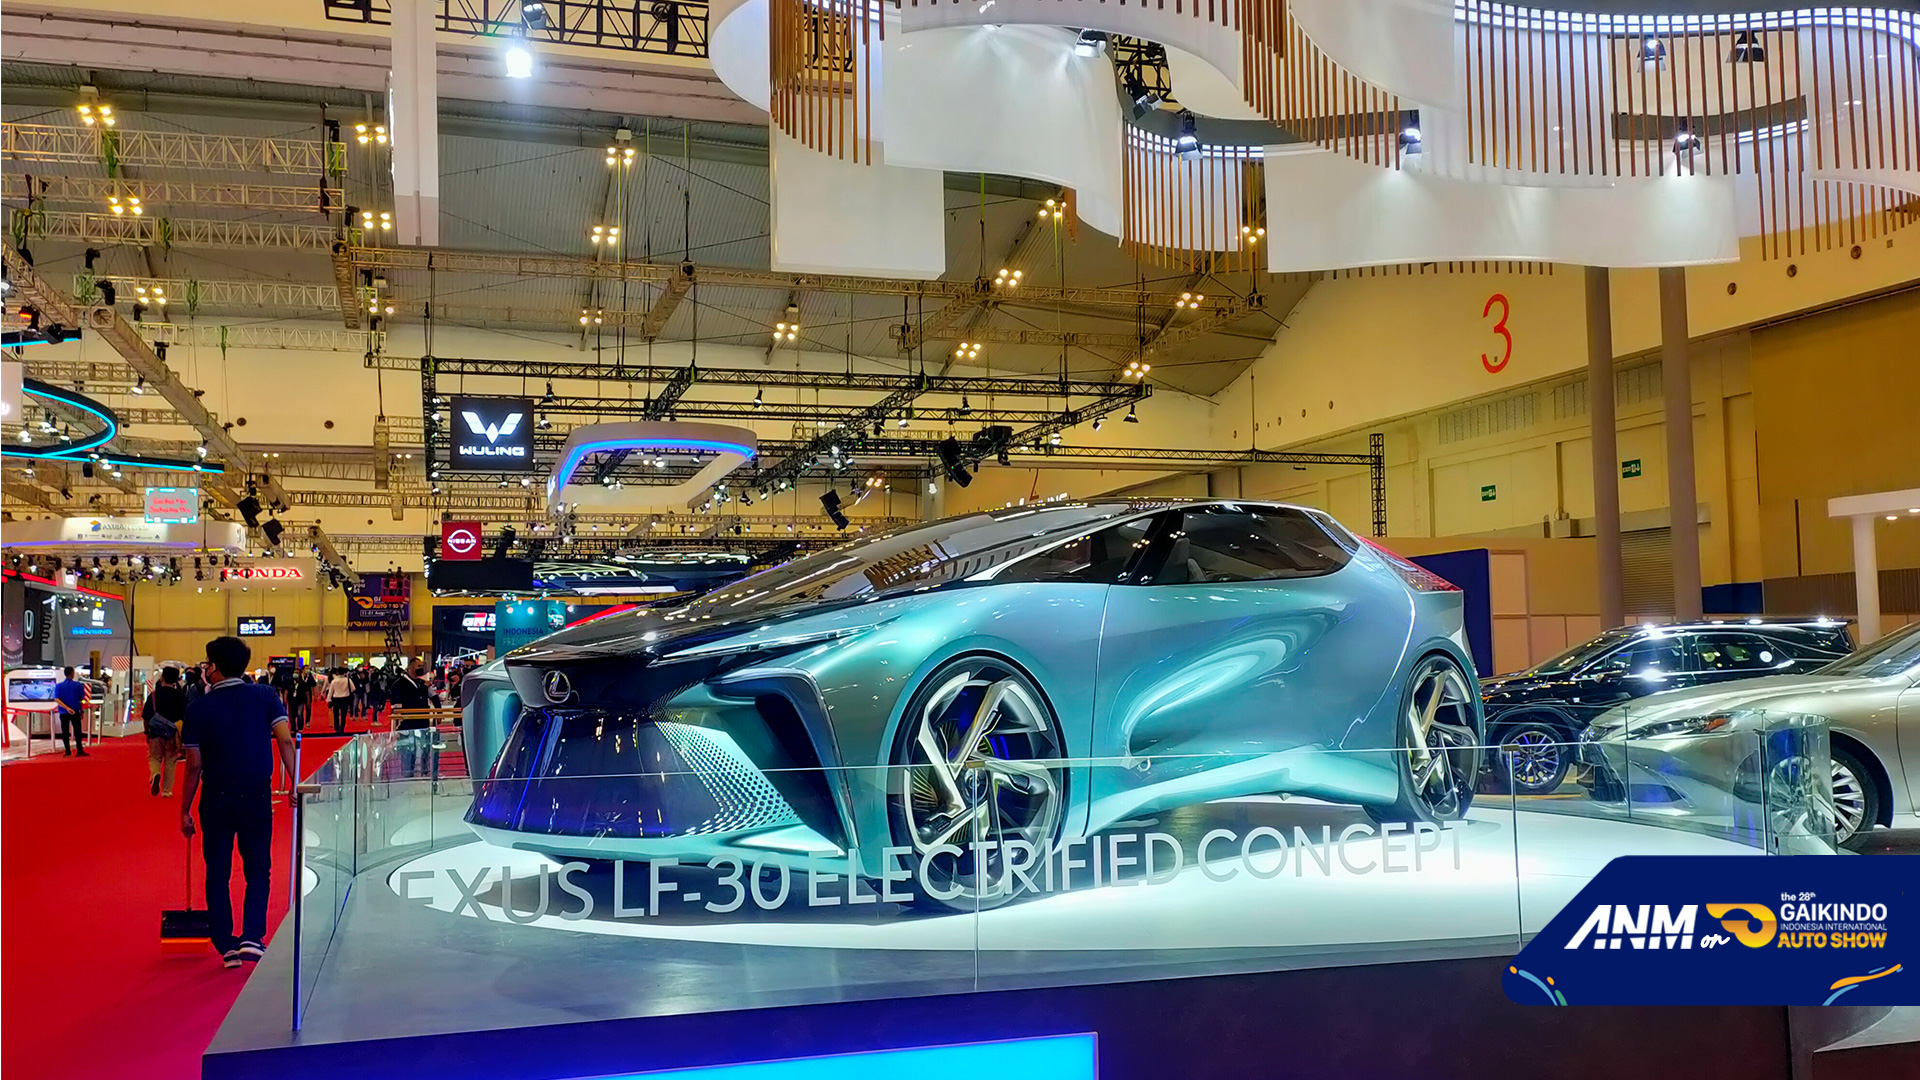 Berita, lexus-ev-concept: GIIAS 2021: Lexus Usung Tema “Reimagine the Future of Amazing”